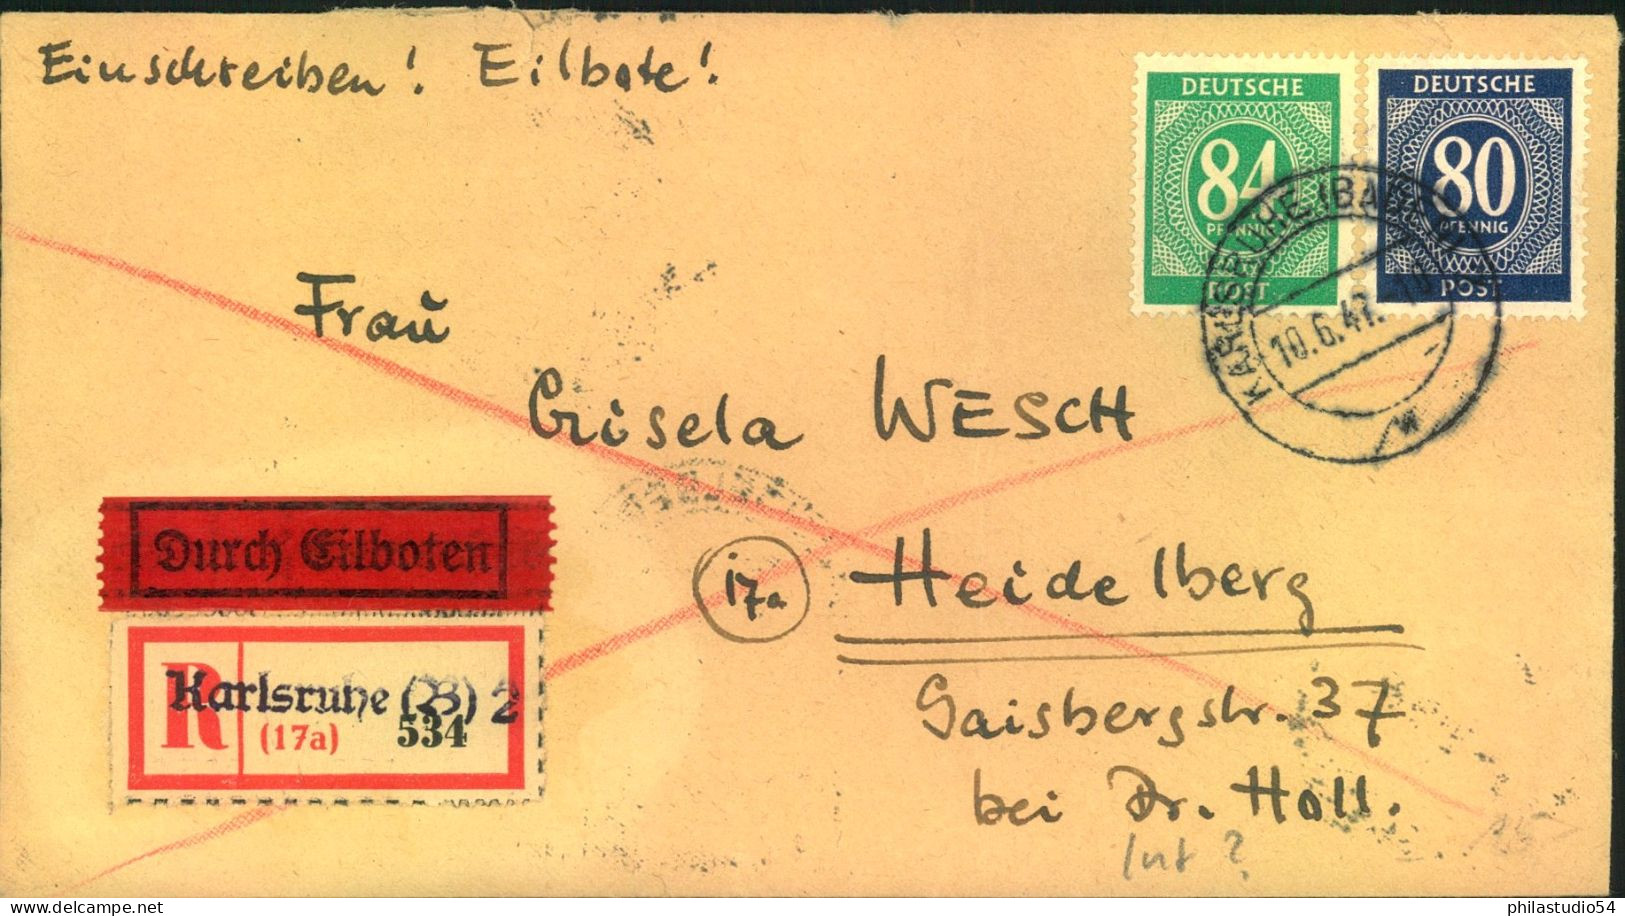 1947, Einschreiben / Eilboten Aus KARLSRIHE Mit Not-R-ettel Nit 80 Und 84 Pfg. Ziffer - Briefe U. Dokumente